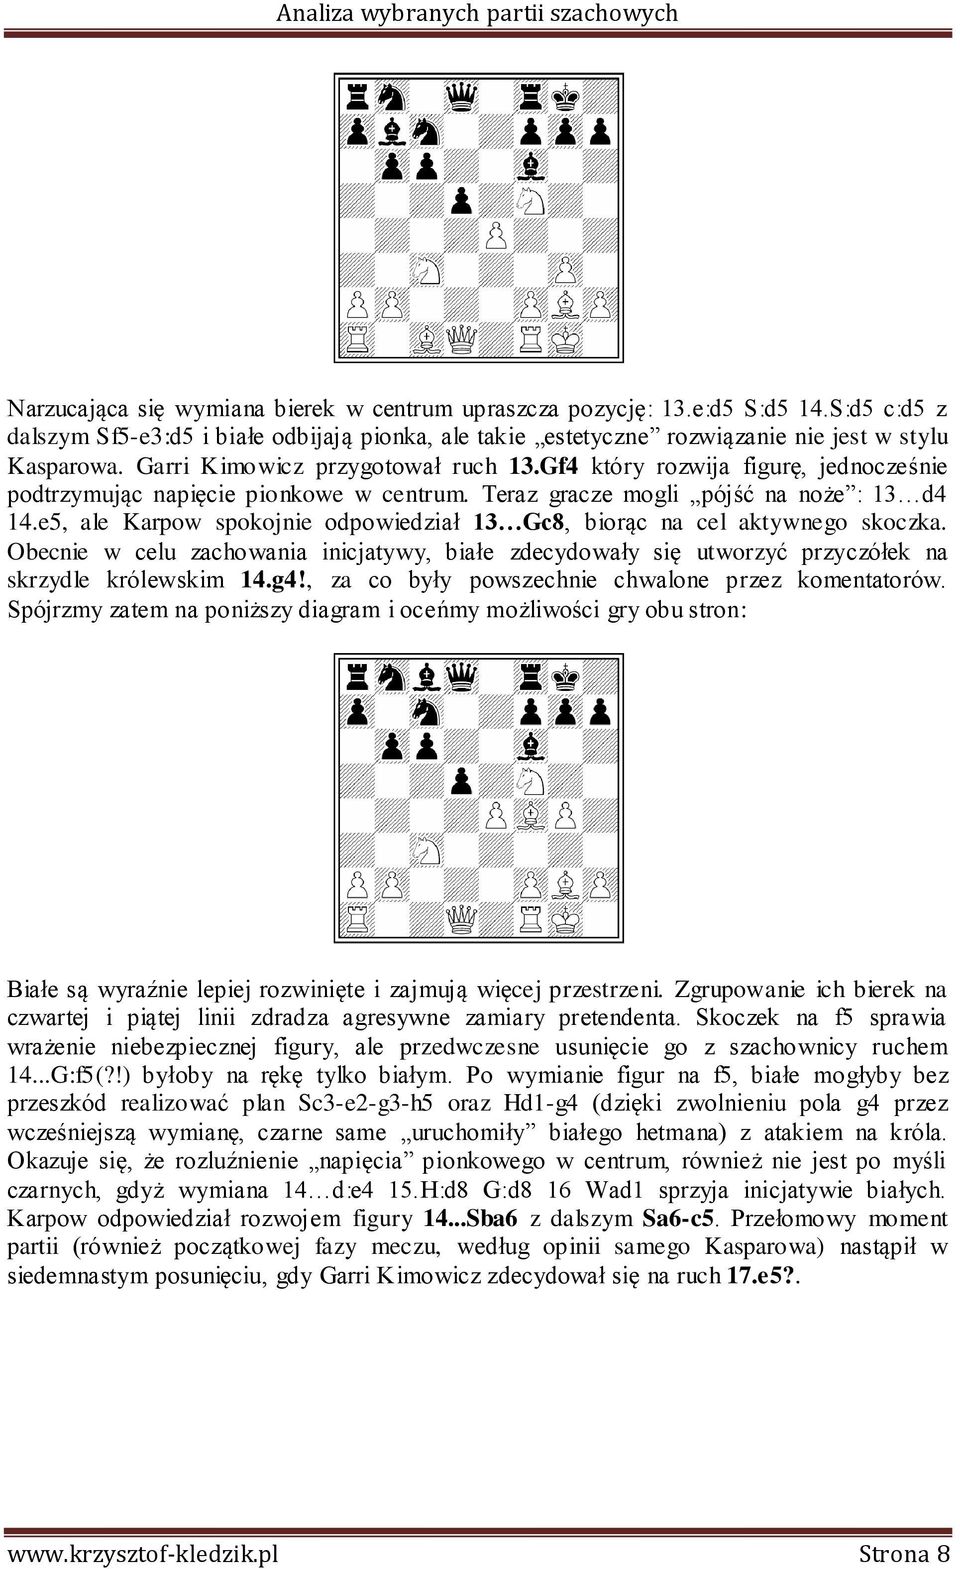 e5, ale Karpow spokojnie odpowiedział 13 Gc8, biorąc na cel aktywnego skoczka. Obecnie w celu zachowania inicjatywy, białe zdecydowały się utworzyć przyczółek na skrzydle królewskim 14.g4!